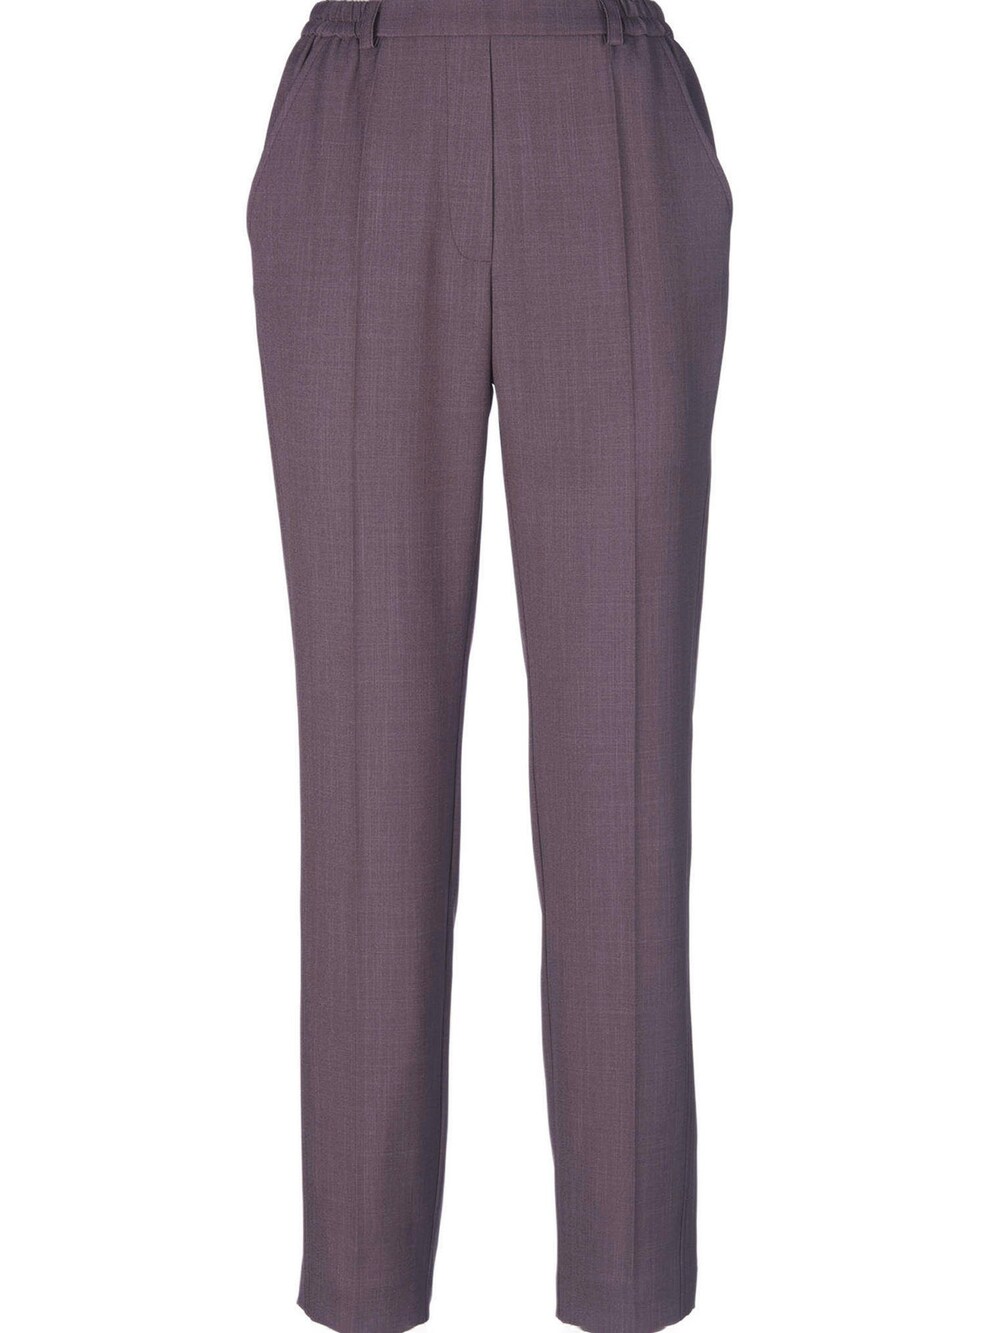 Обычные плиссированные брюки Goldner, фиолетовый